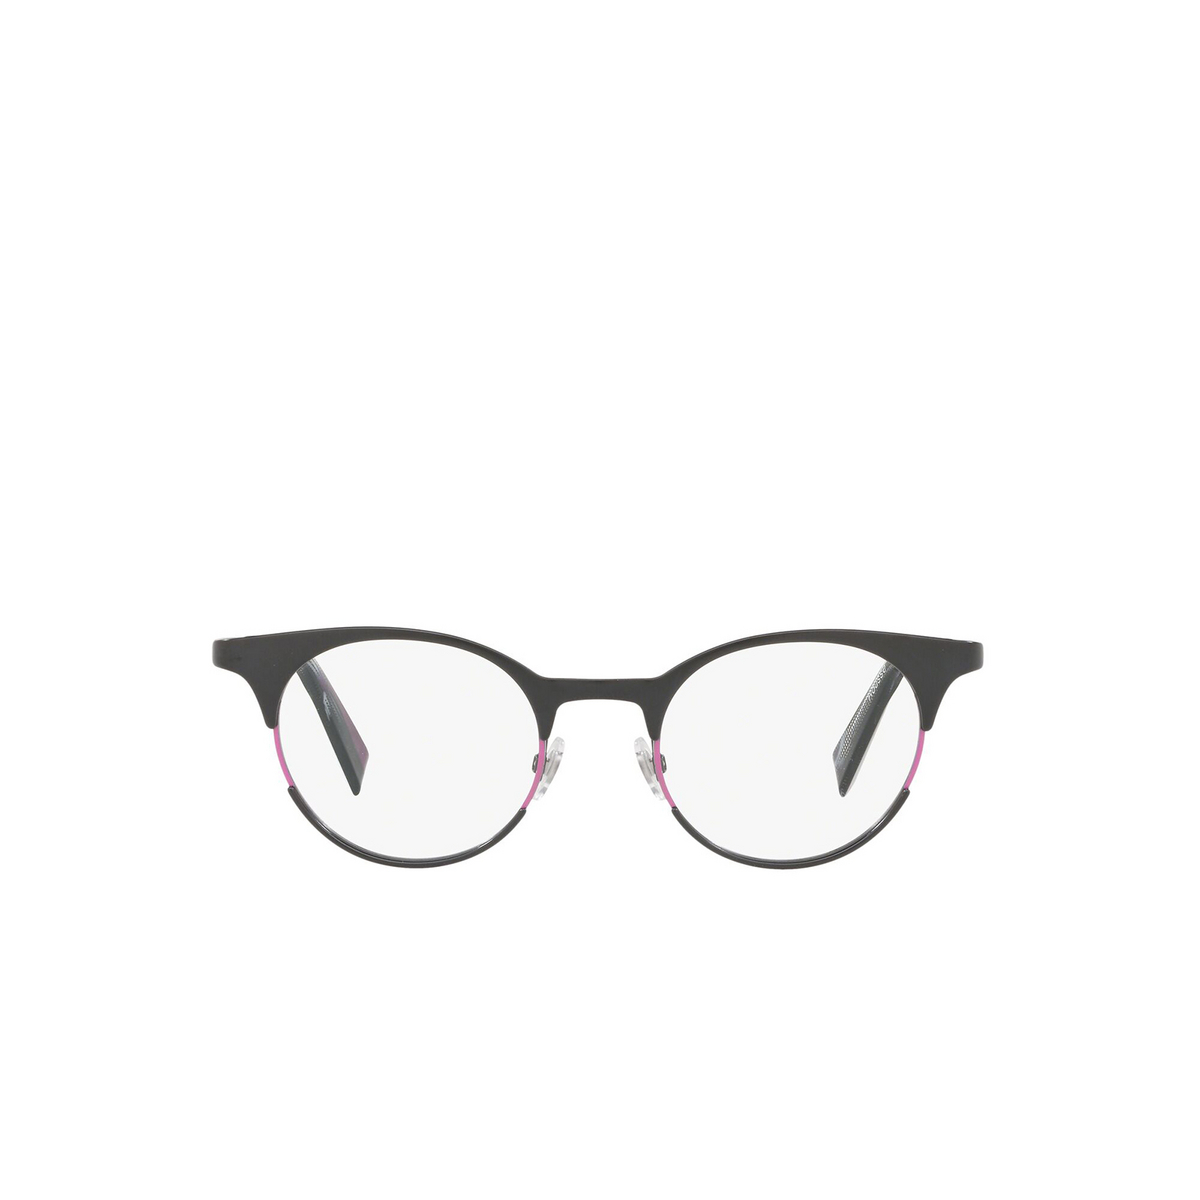 Alain Mikli® Round Eyeglasses: Rousse A02034 color Matte Black Fuxia 001 - front view.